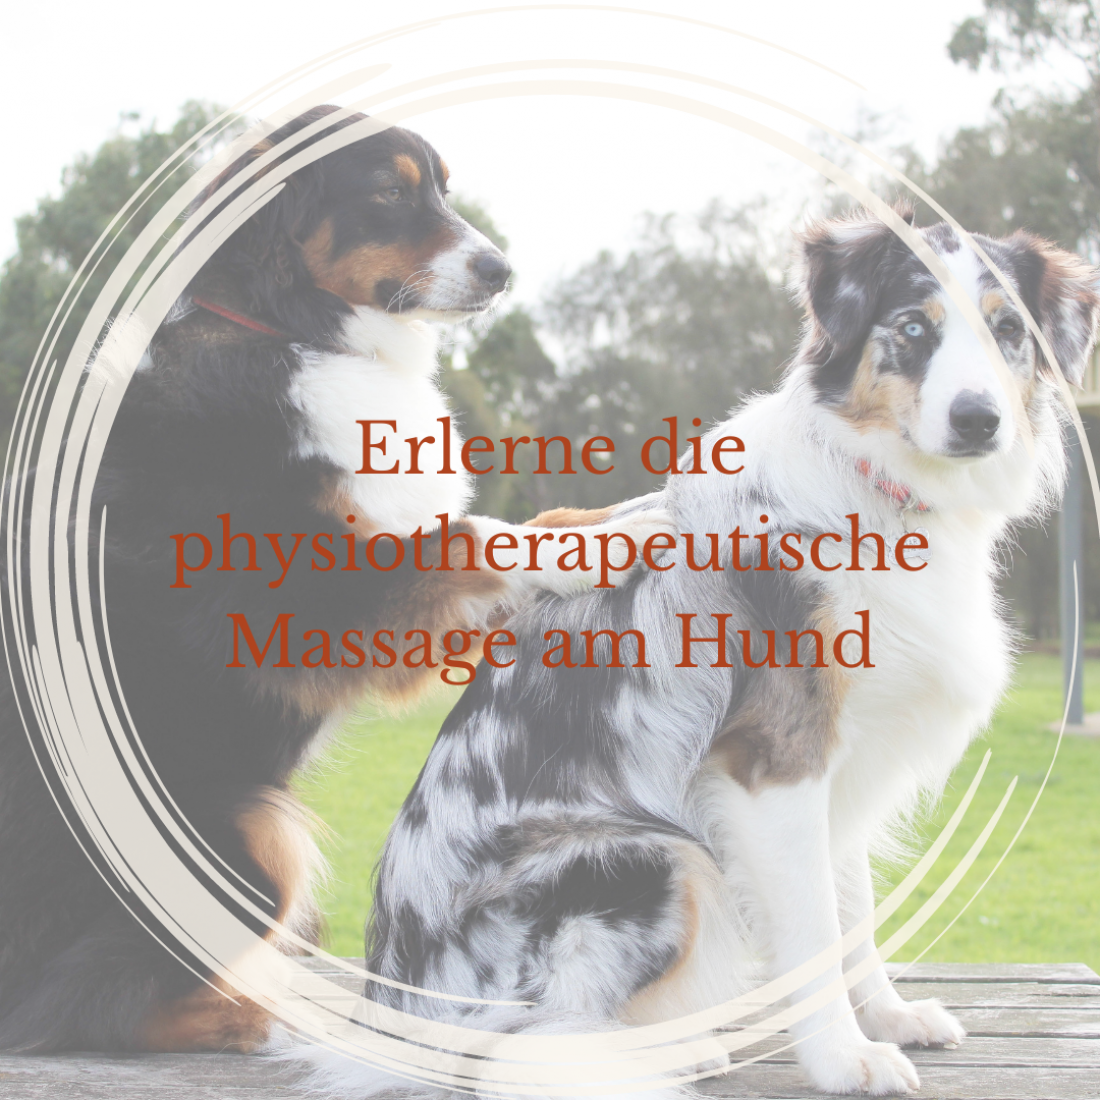 Erlerne die physiotherapeutische Massage am Hund mit Stephanie Neumann